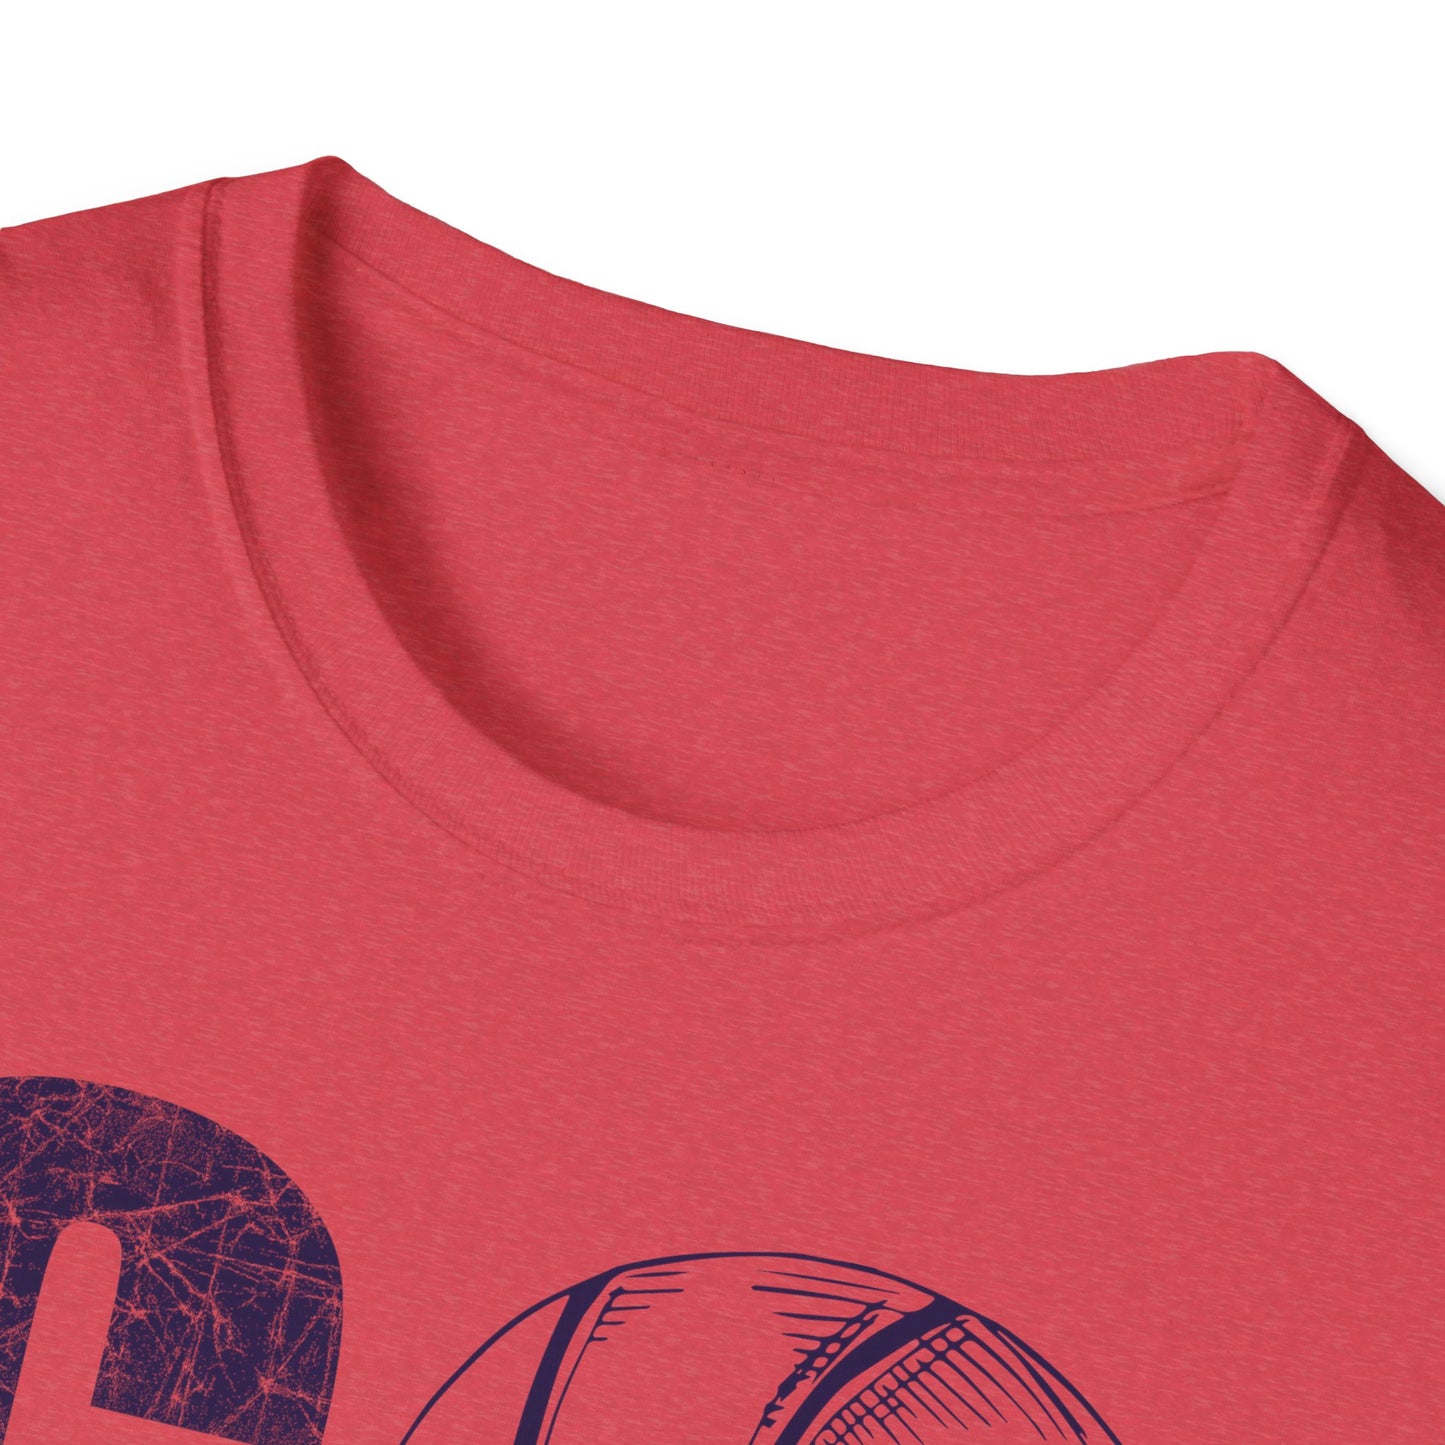 Go Saints Basketball Unisex Softstyle T-Shirt